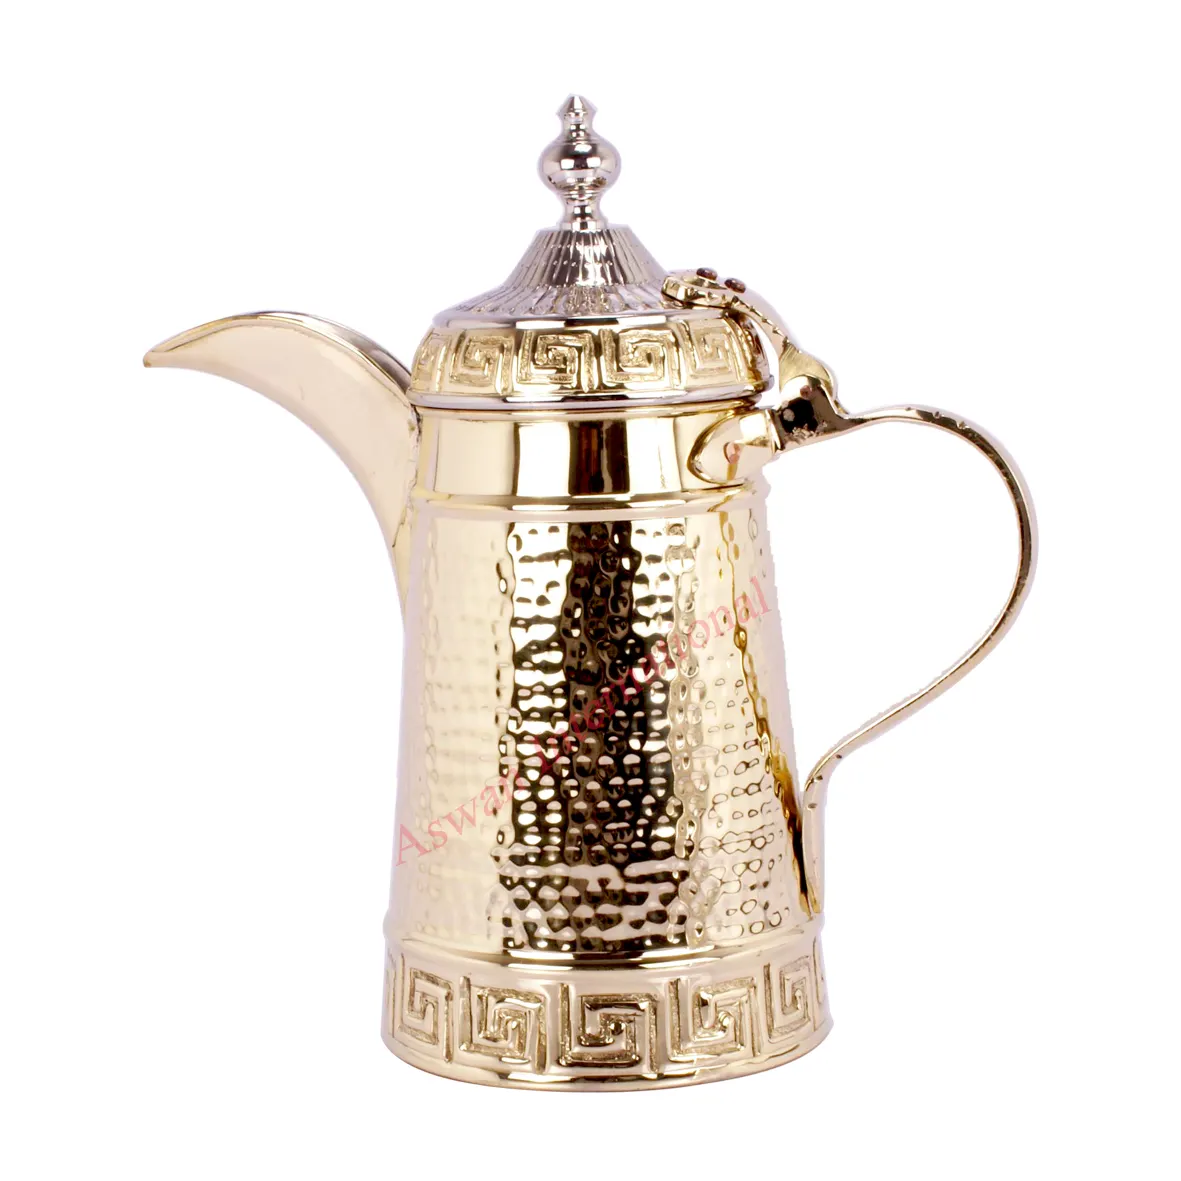 النحاس Dallah مطروق وعاء لتقديم القهوة العربي اليدوية اليدوية يتوهم القهوة أعلى بيع بأسعار معقولة أفضل القهوة Dallah